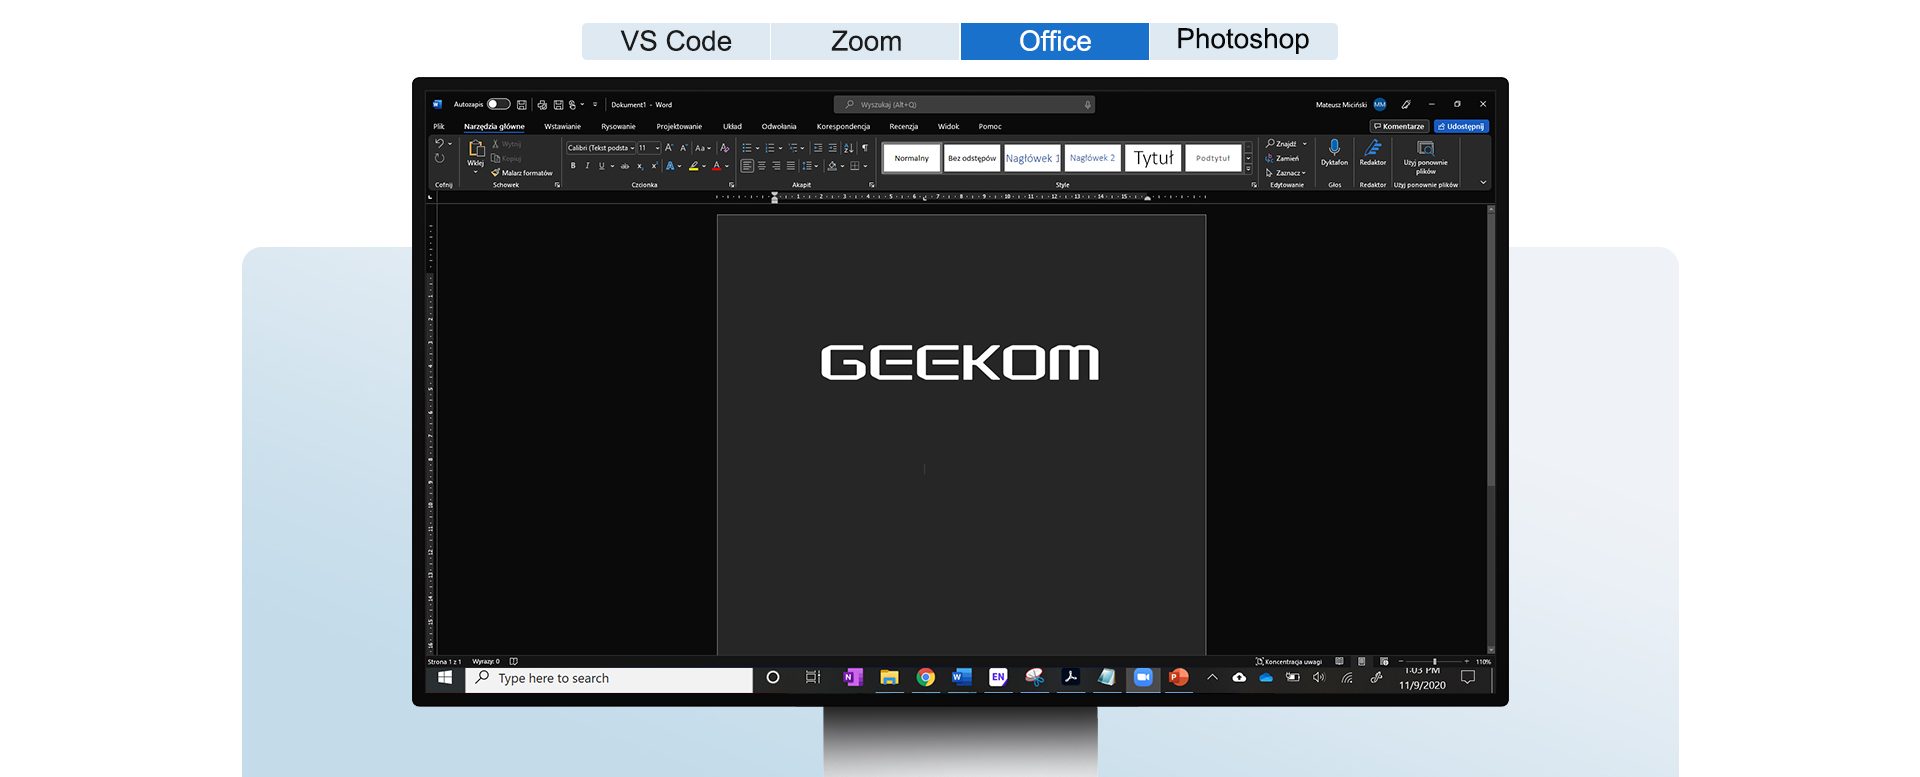 GEEKOM Mini IT8 SE for Office